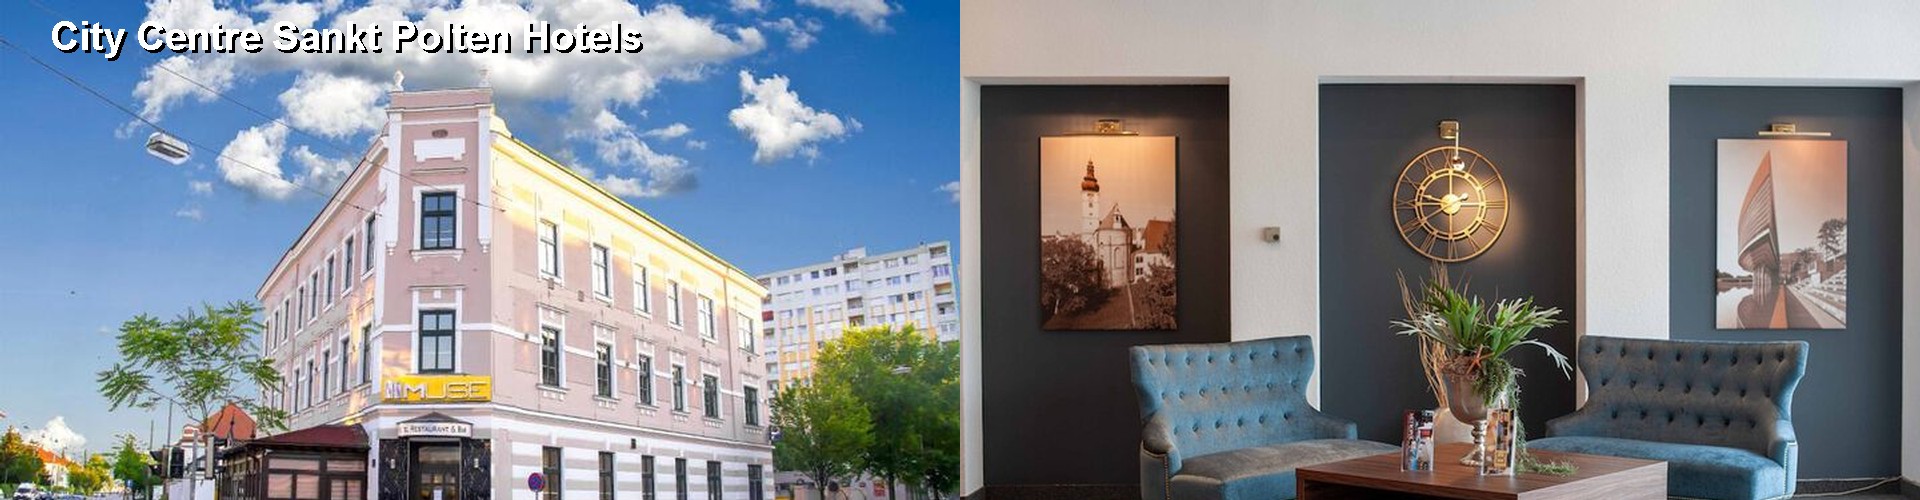 4 Best Hotels near City Centre Sankt Polten